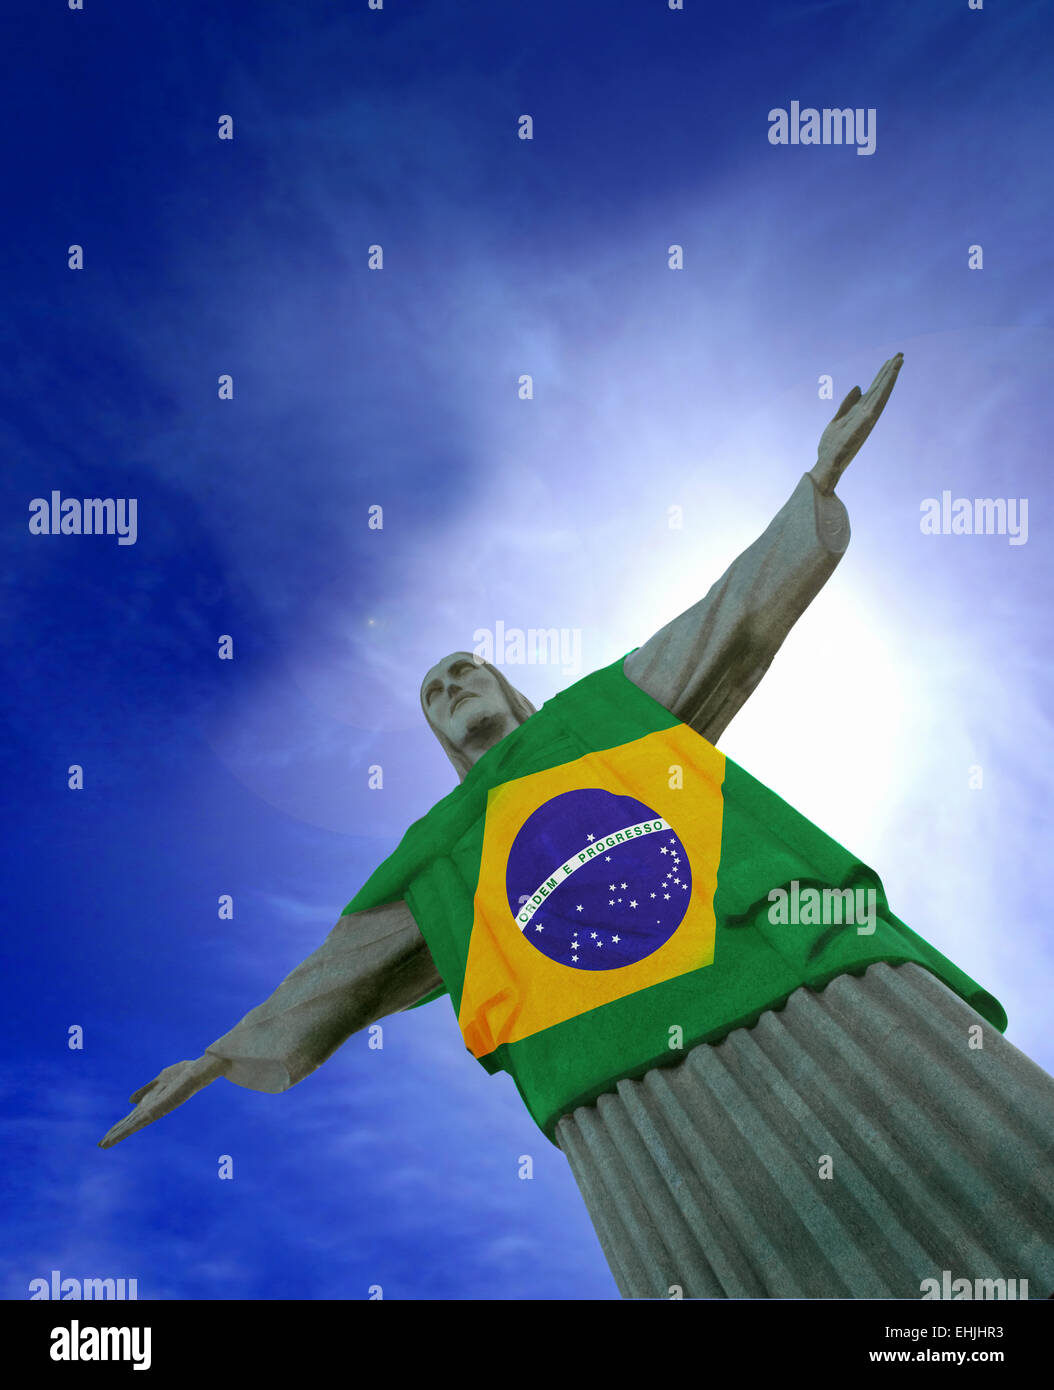 Christ the Redeemer statue at Corcovado, Rio de Janeiro, Brazil.  With Brazilian flag (Bandeira do Brasil). Stock Photo